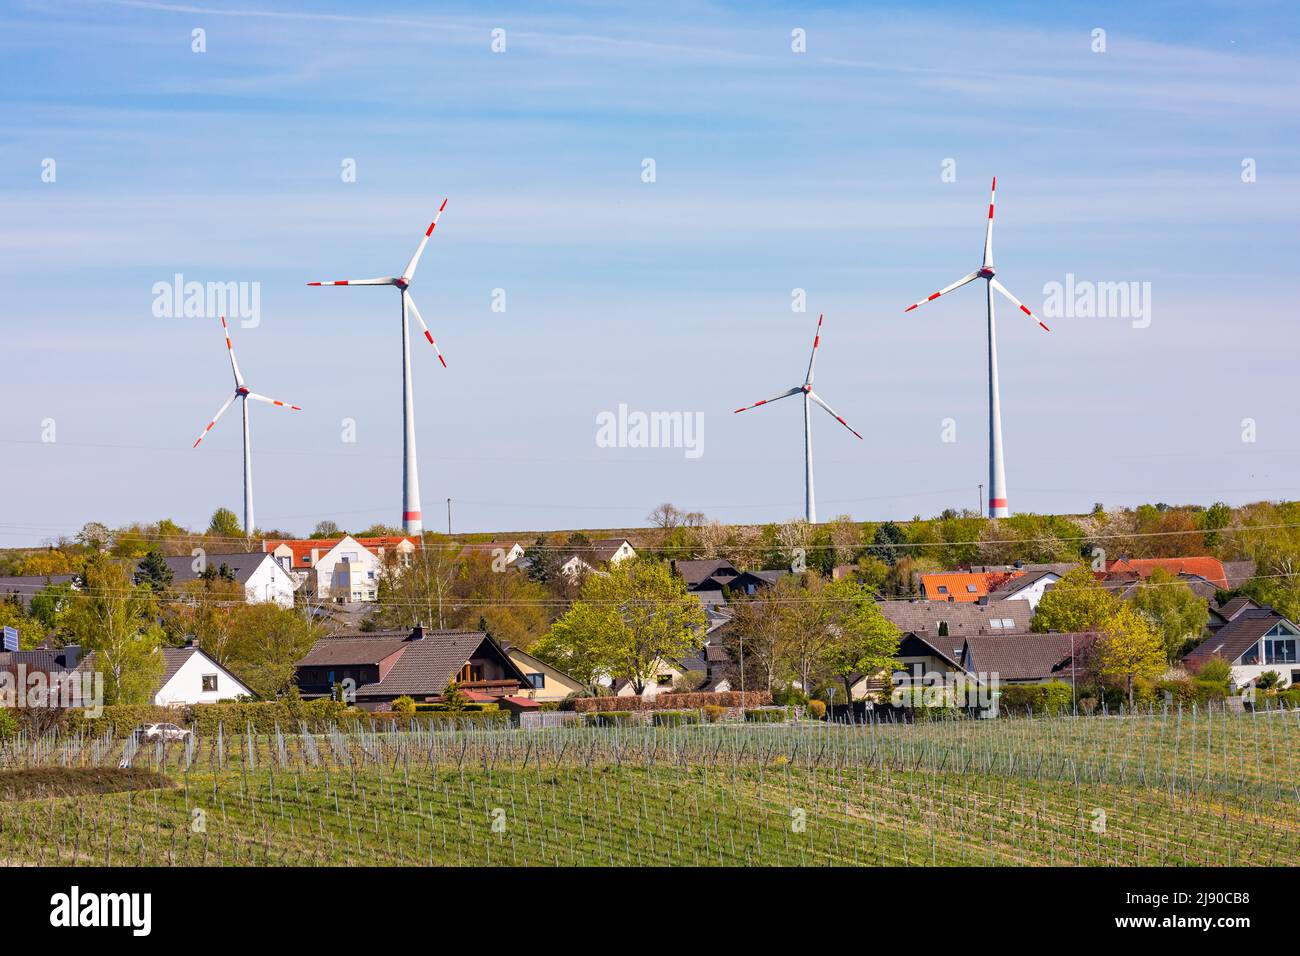 Eine Siedlung in einer ländlichen Landschaft mit Feldern und Reben wird von riesigen Windkraftanlagen dominiert Stockfoto